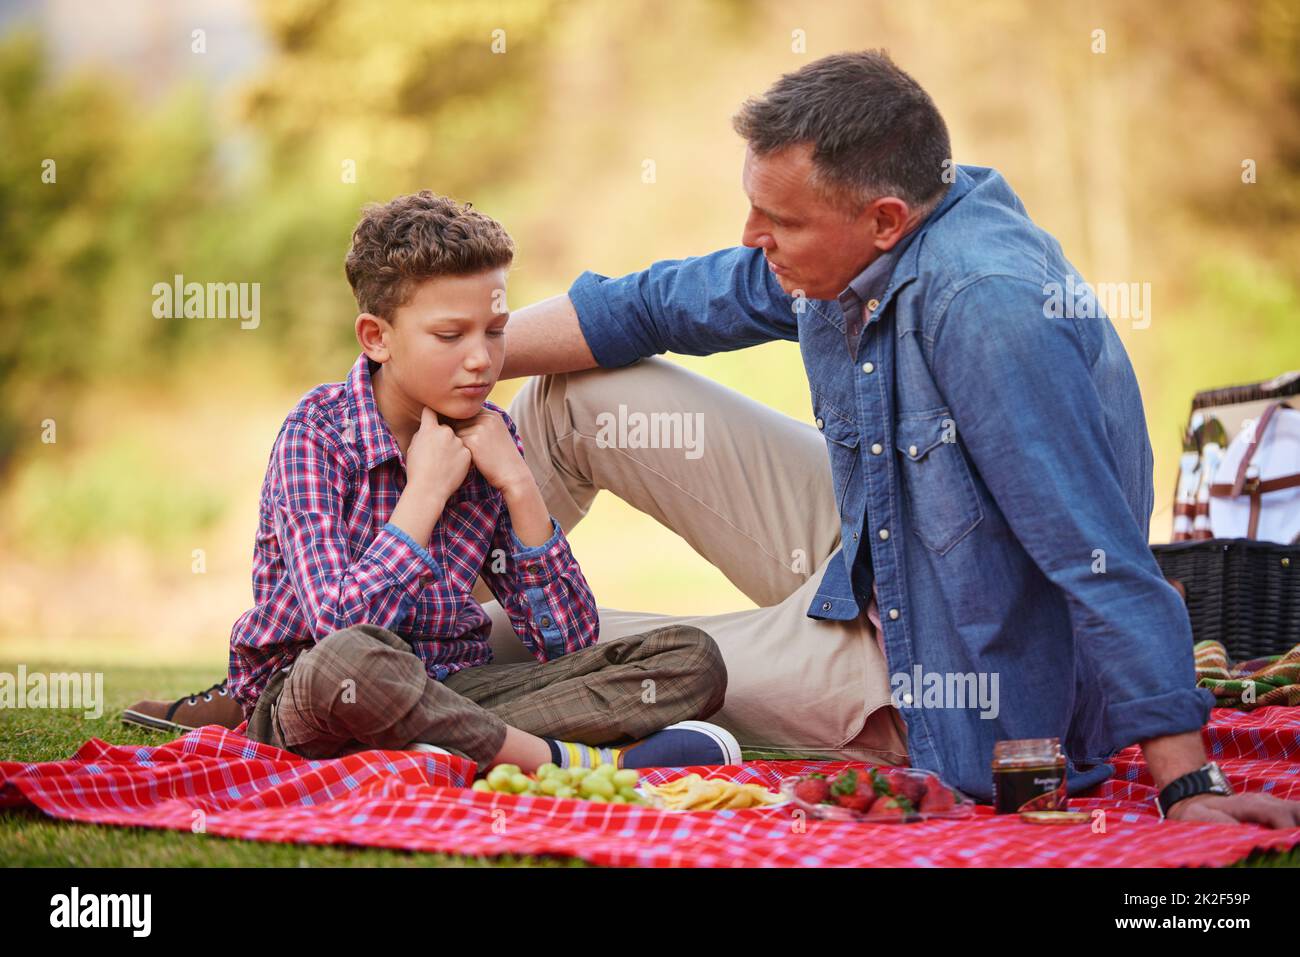 Son père est toujours là pour lui. Photo d'un père réconfortant son jeune fils assis dans un parc. Banque D'Images